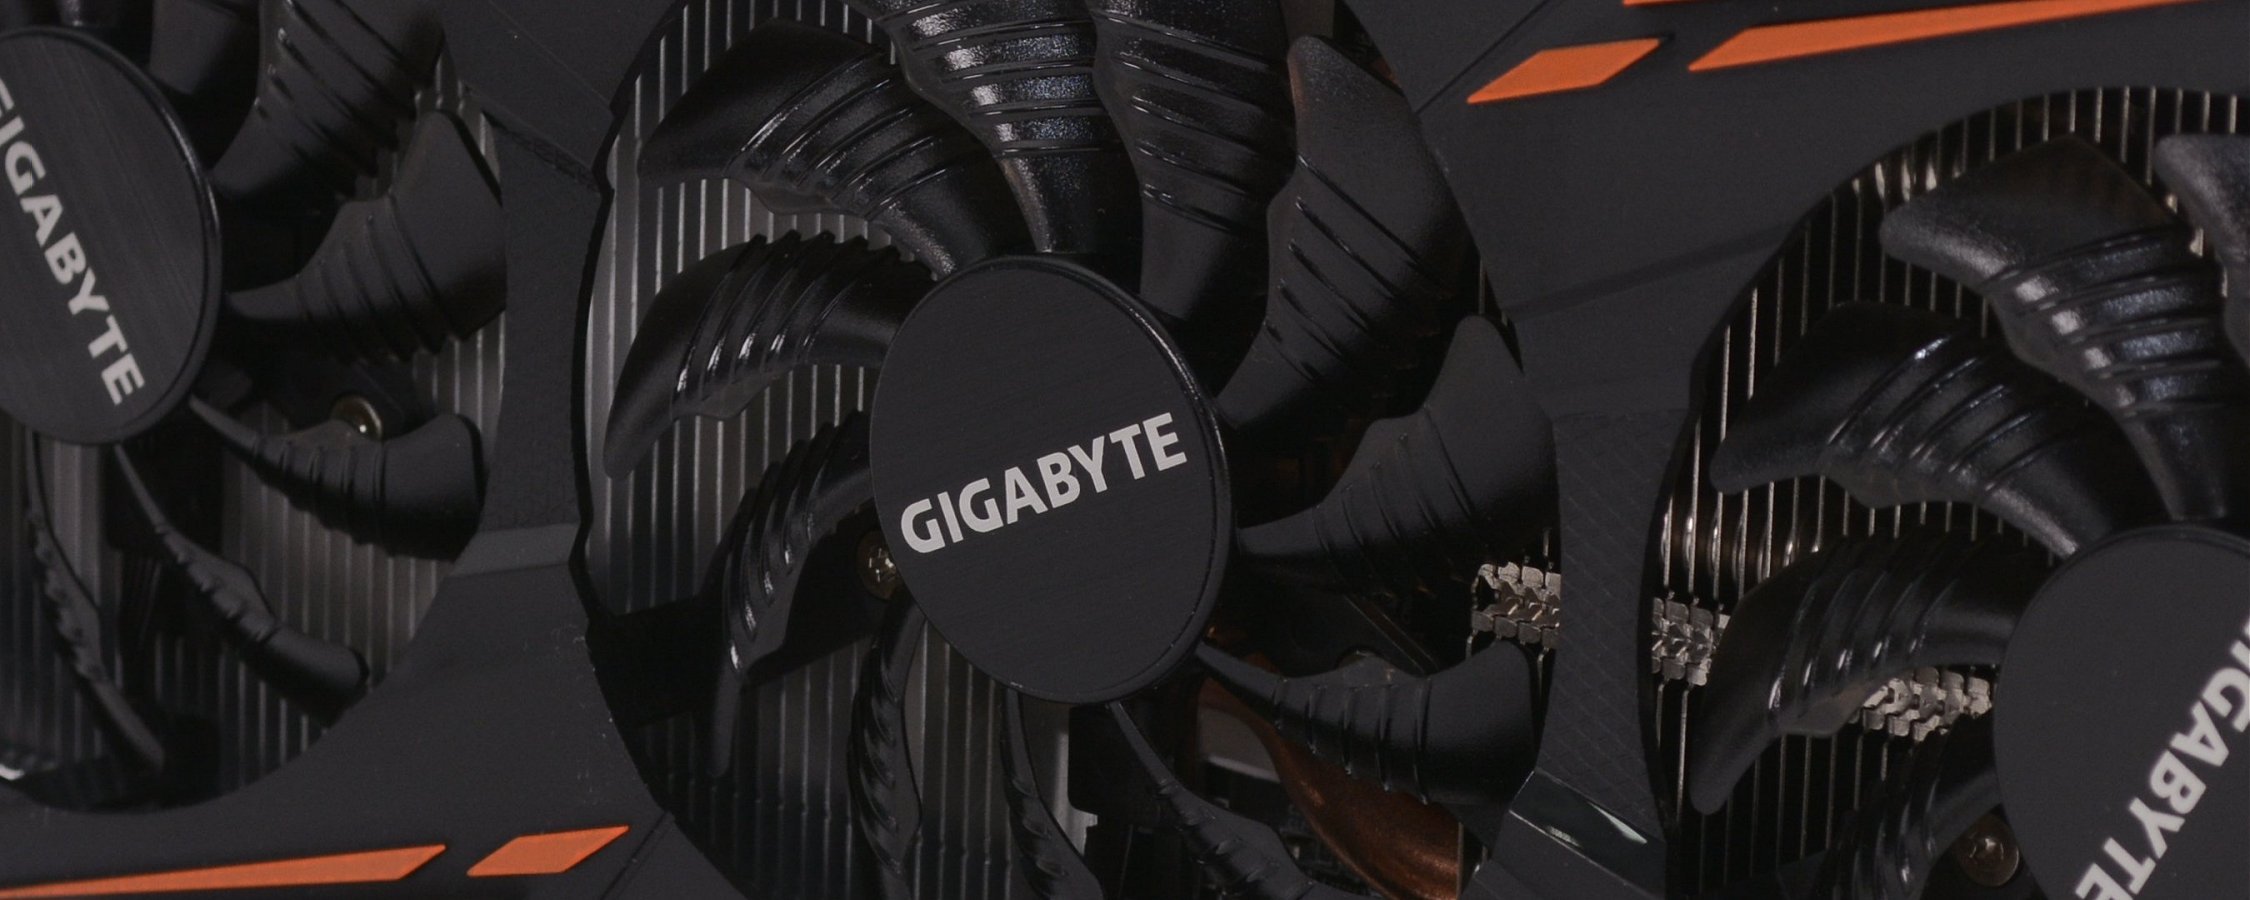 استعراض Gigabyte GeForce GTX 1080 G1 للألعاب 7